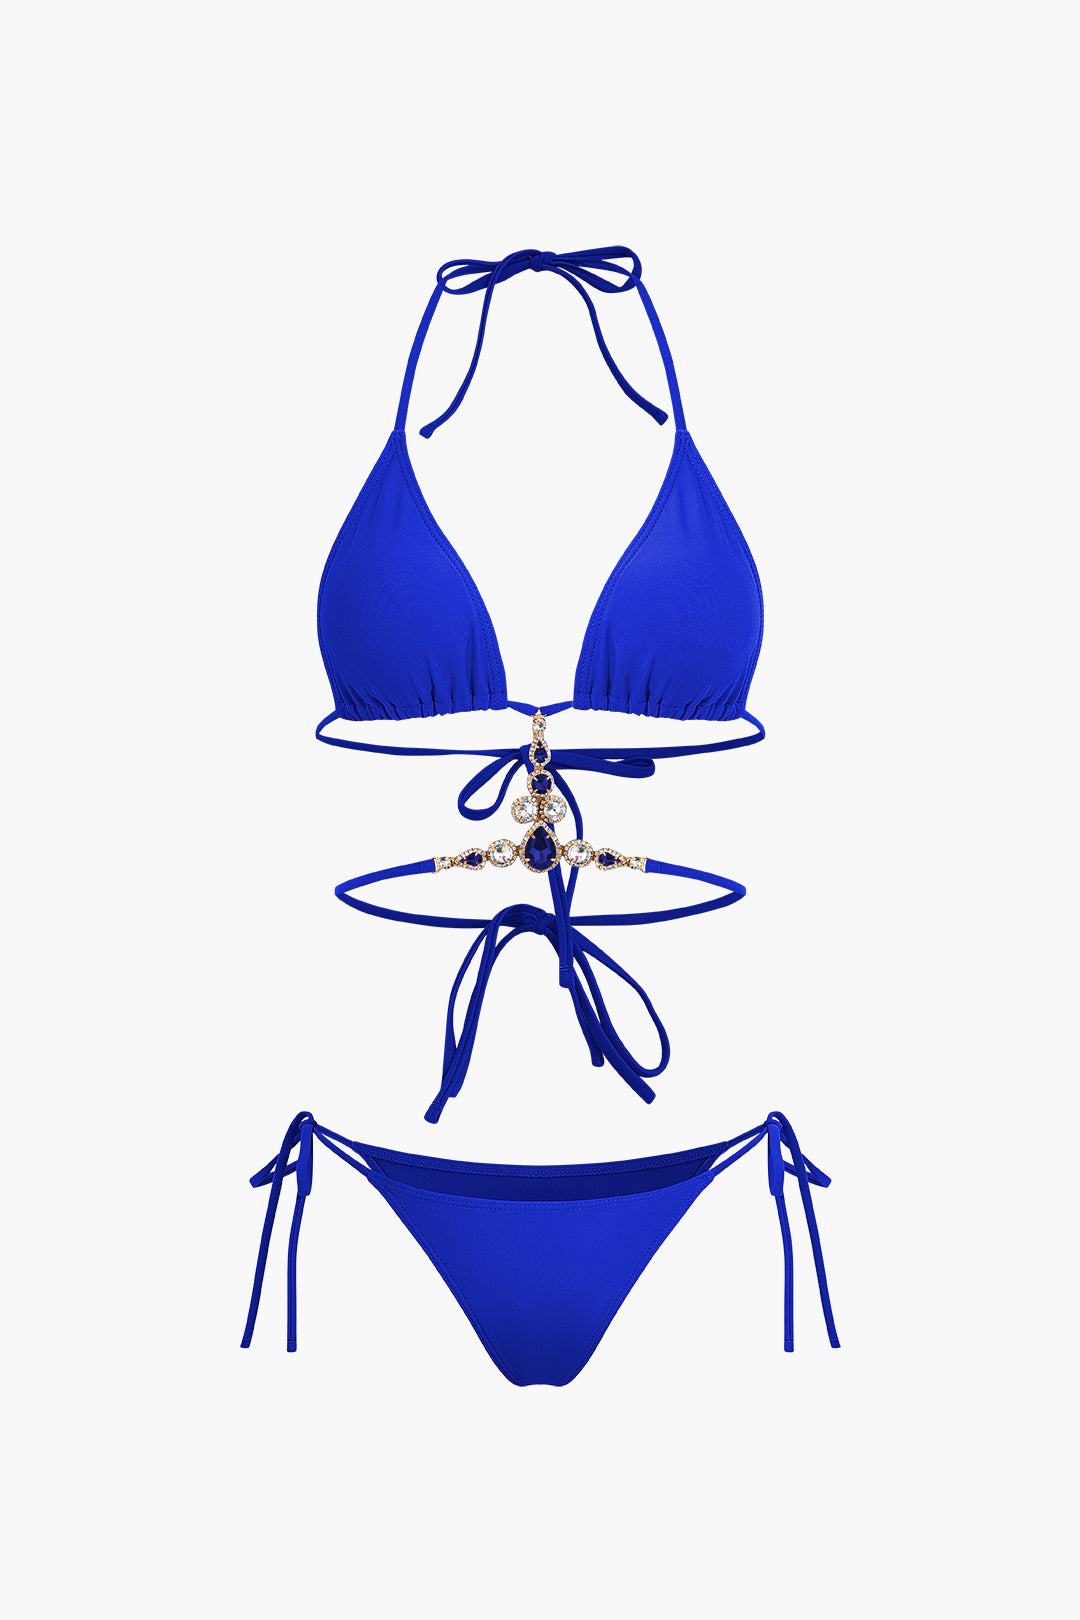 Halter Neck Bikini with Jeweled Accents and Sheer Wrap Skirt Bikini Set